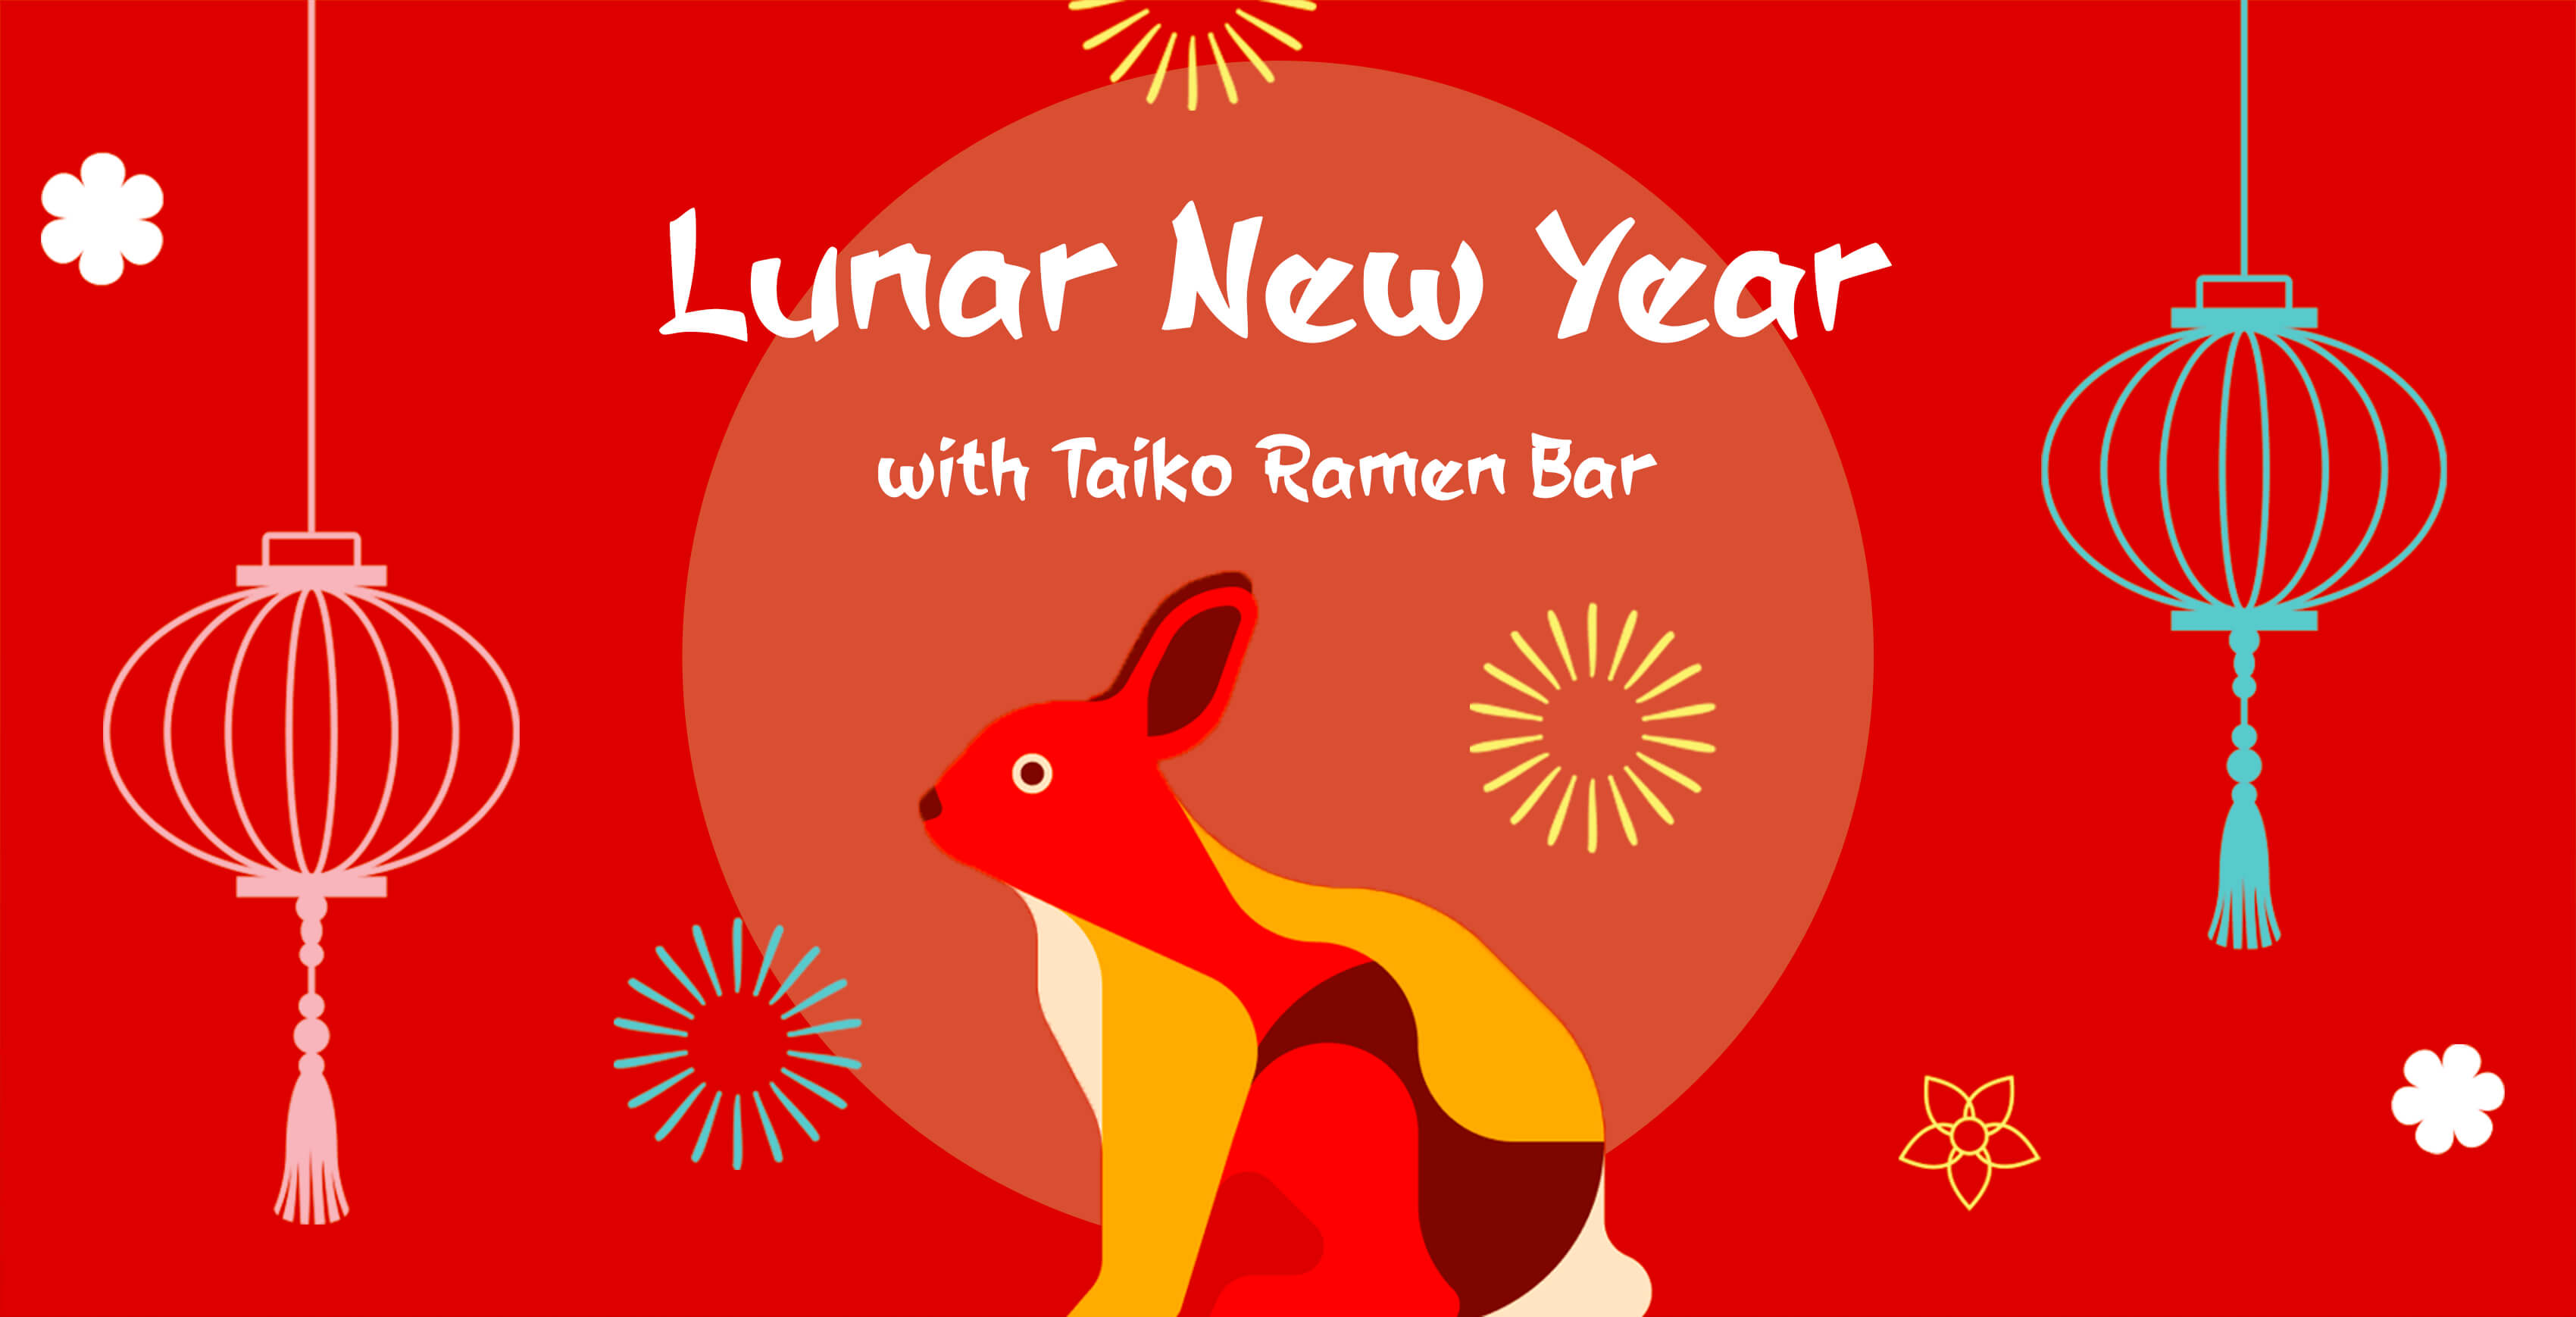 Lunar New Year with Taiko Ramen Bar, 22/01